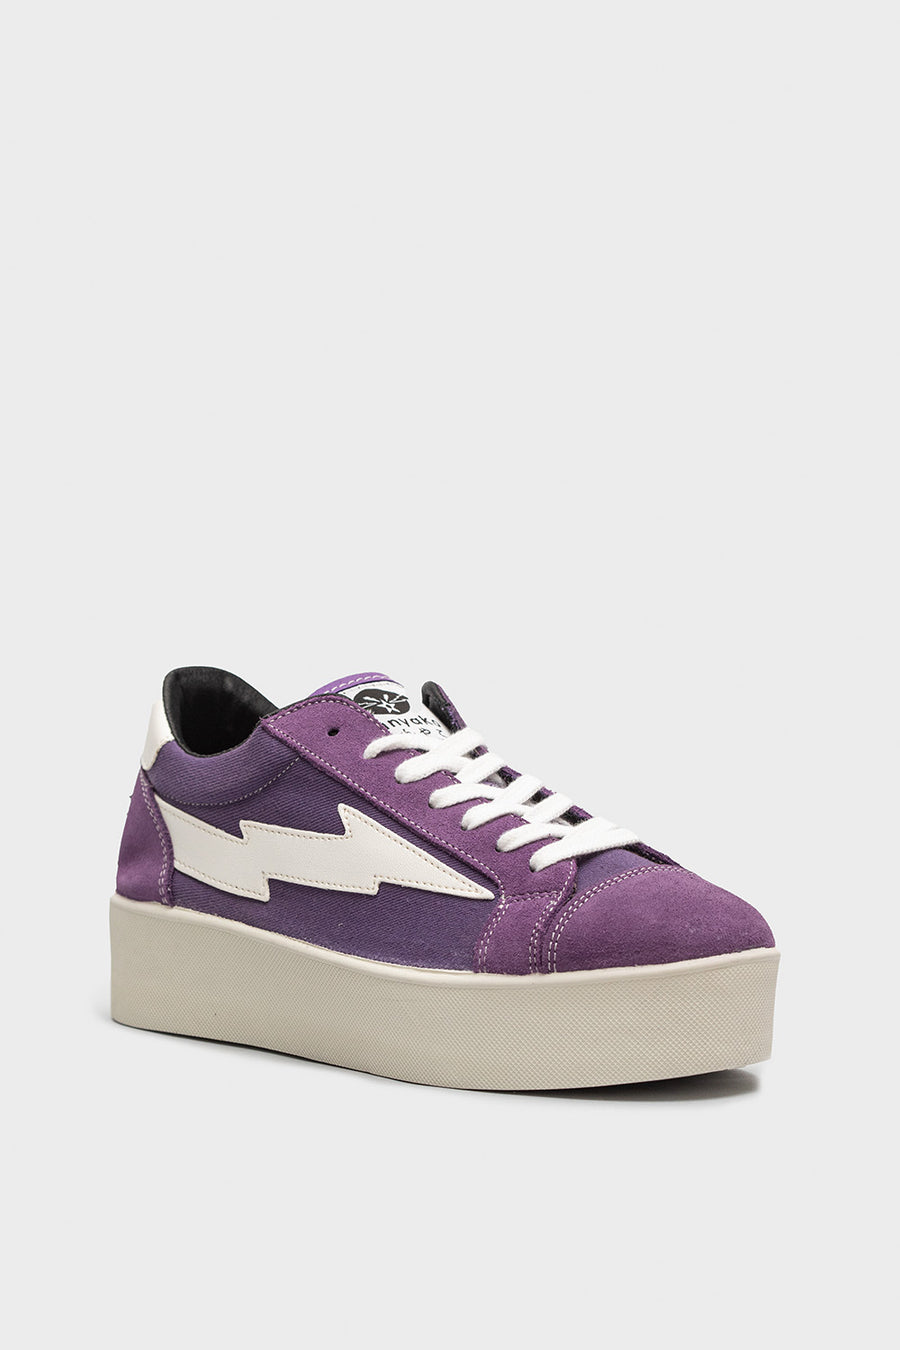 Sneakers da donna in tessuto viola e bianco thuw032